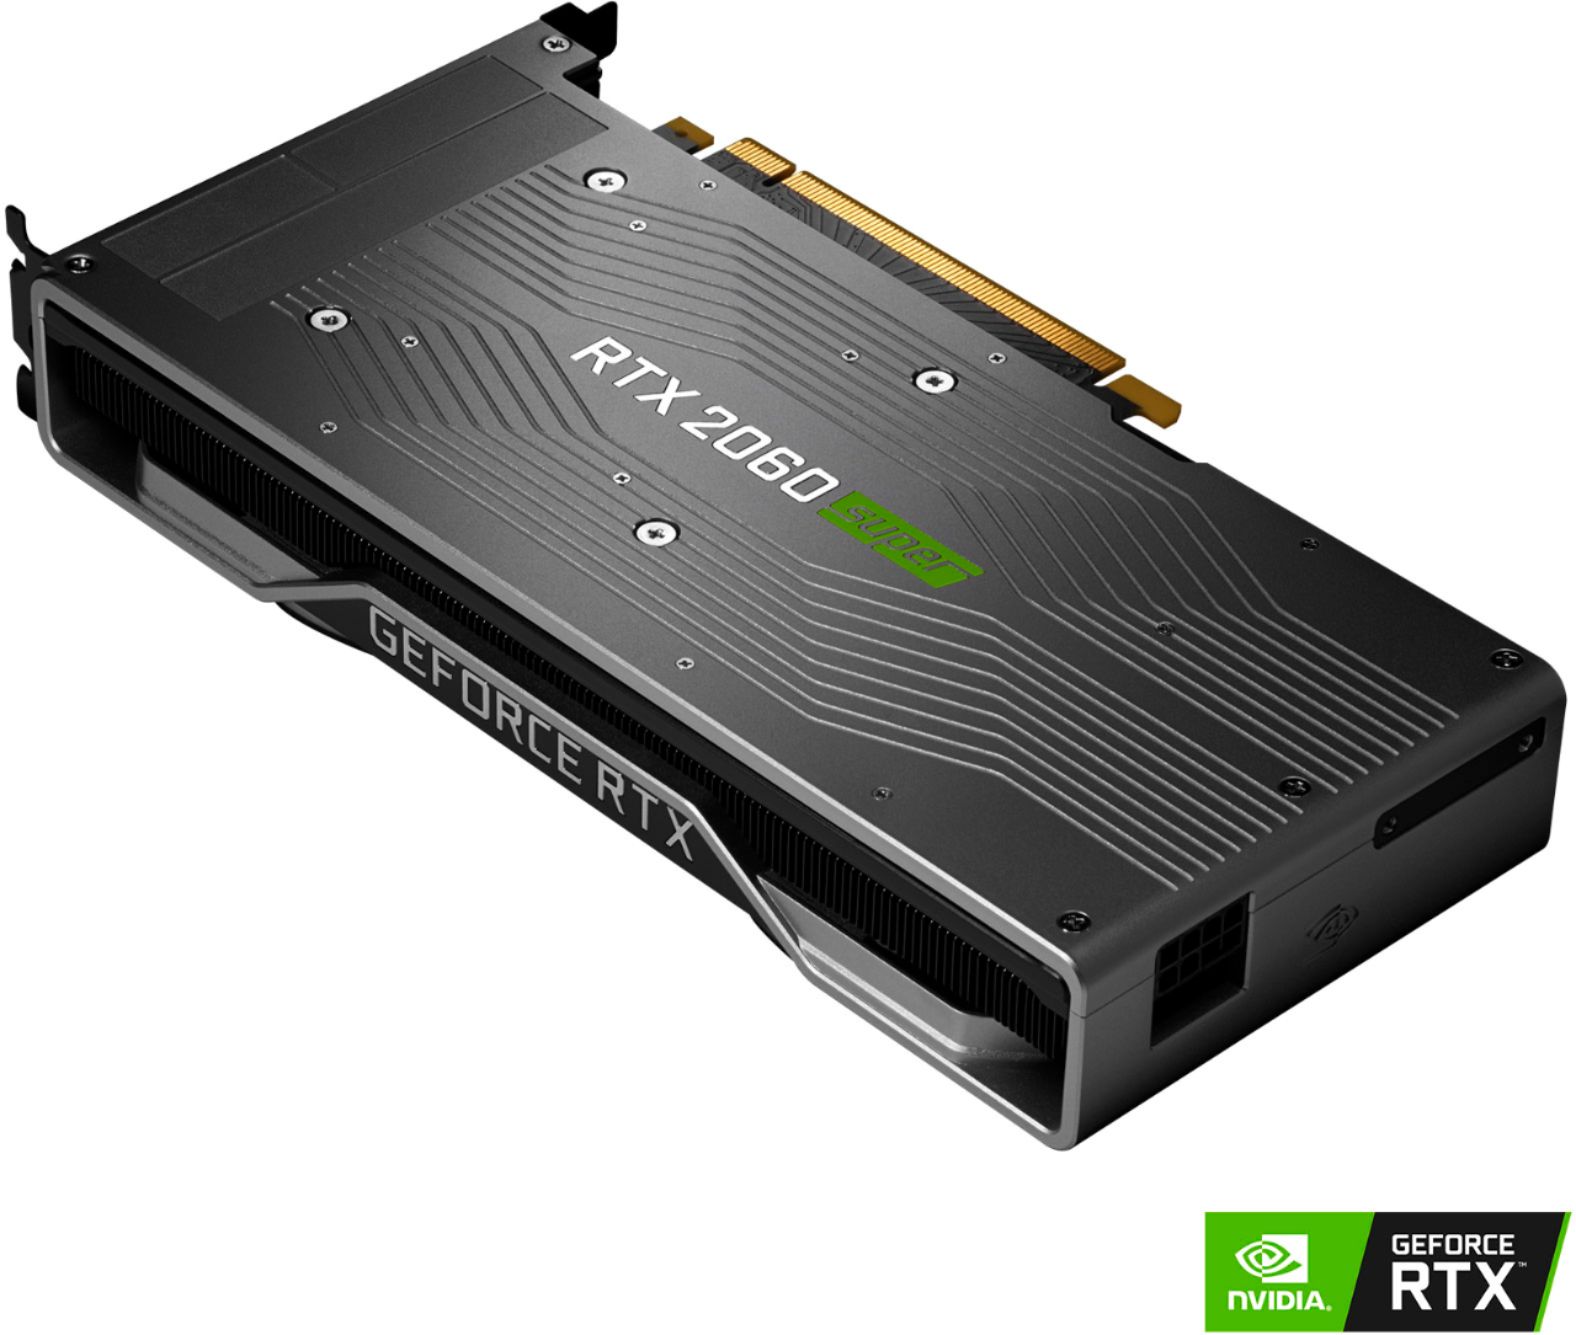 New Stocked Geforce Rtx 2060 Super 8GB GPU Gaming Mini PC Video Card -  China 2060 Super GPU and Geforce Rtx 2060 Super 8GB price